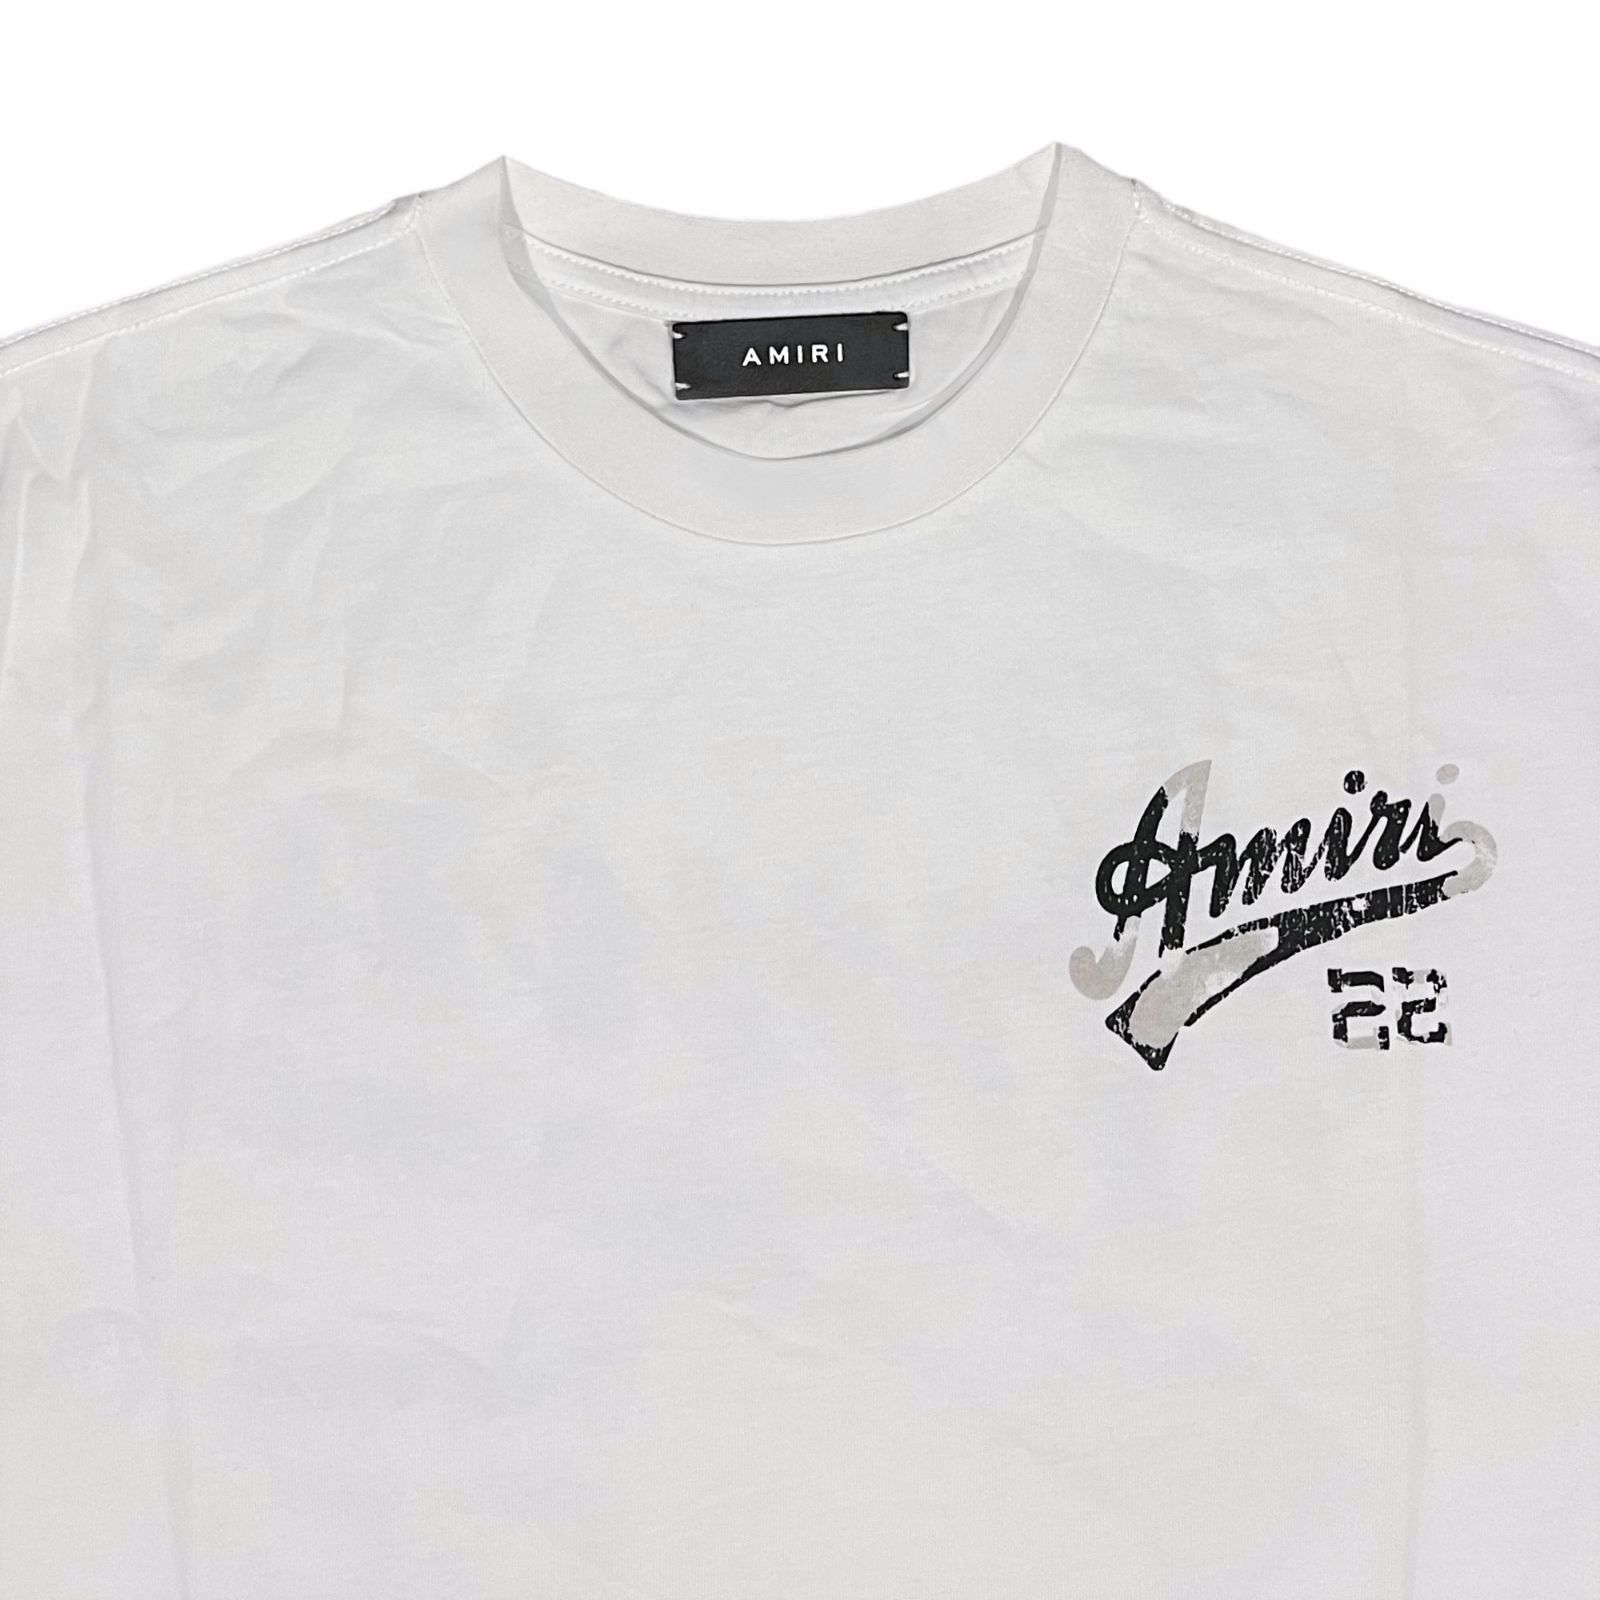 AMIRI アミリ 22 JERSEY Tシャツ ホワイト